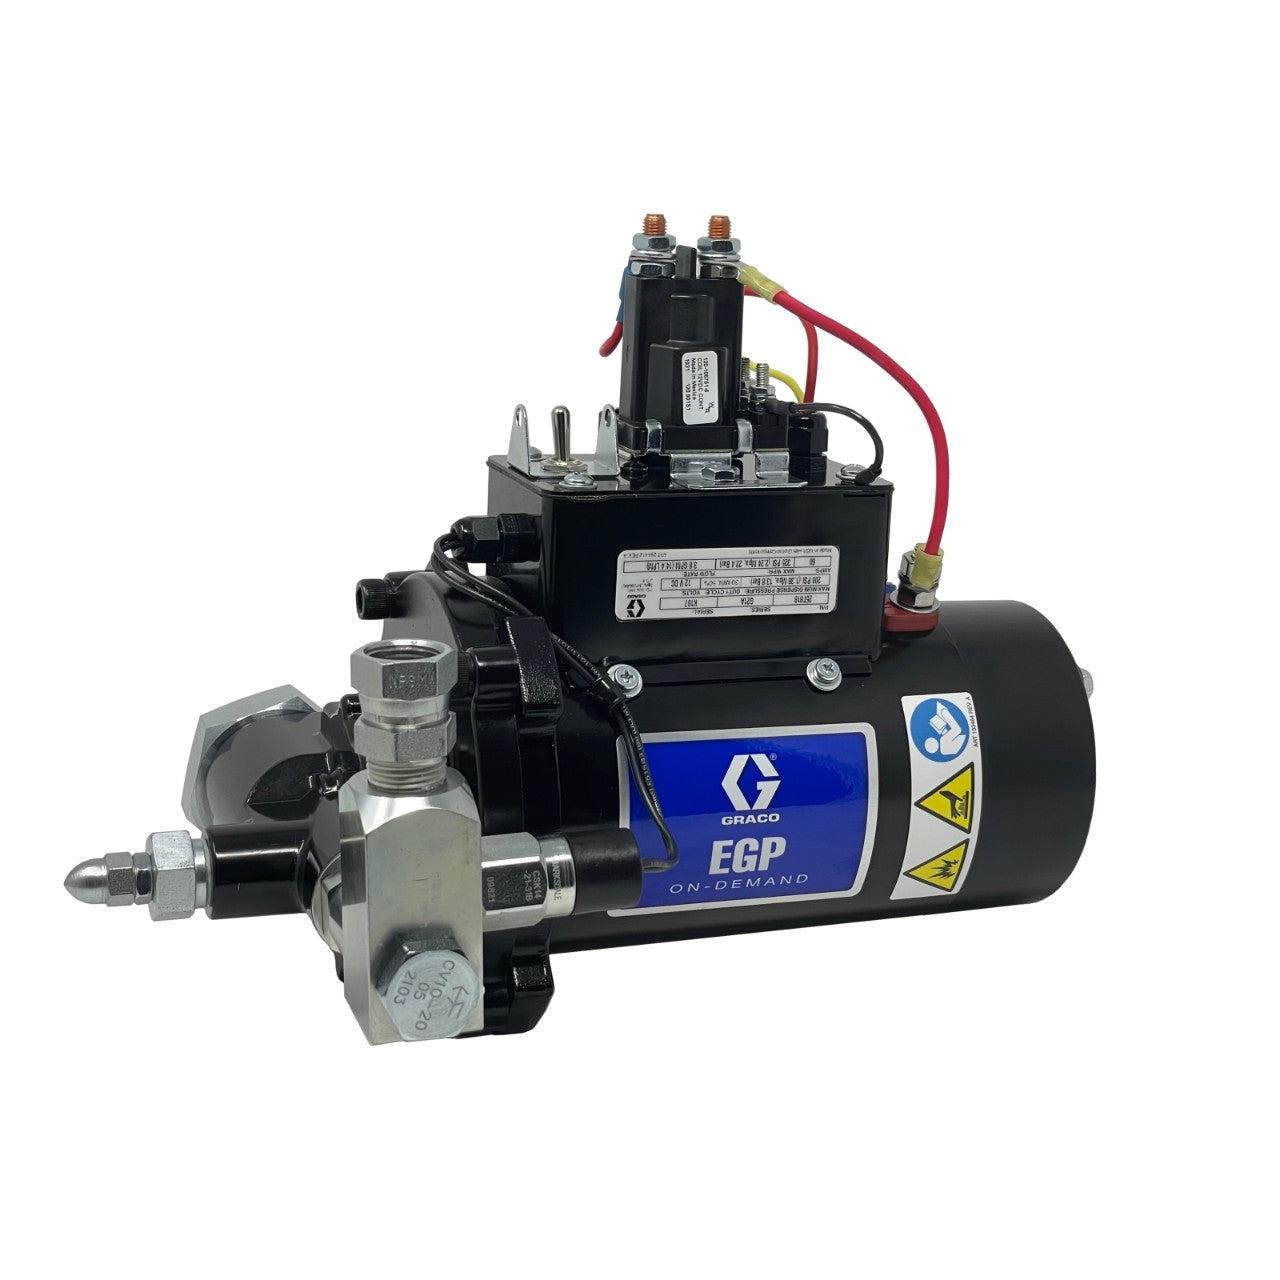 EGP‚Ñ¢ On-Demand Pump, 12 VDC, 3.8 gpm (14.4 lpm), 325 psi (22.4 bar)